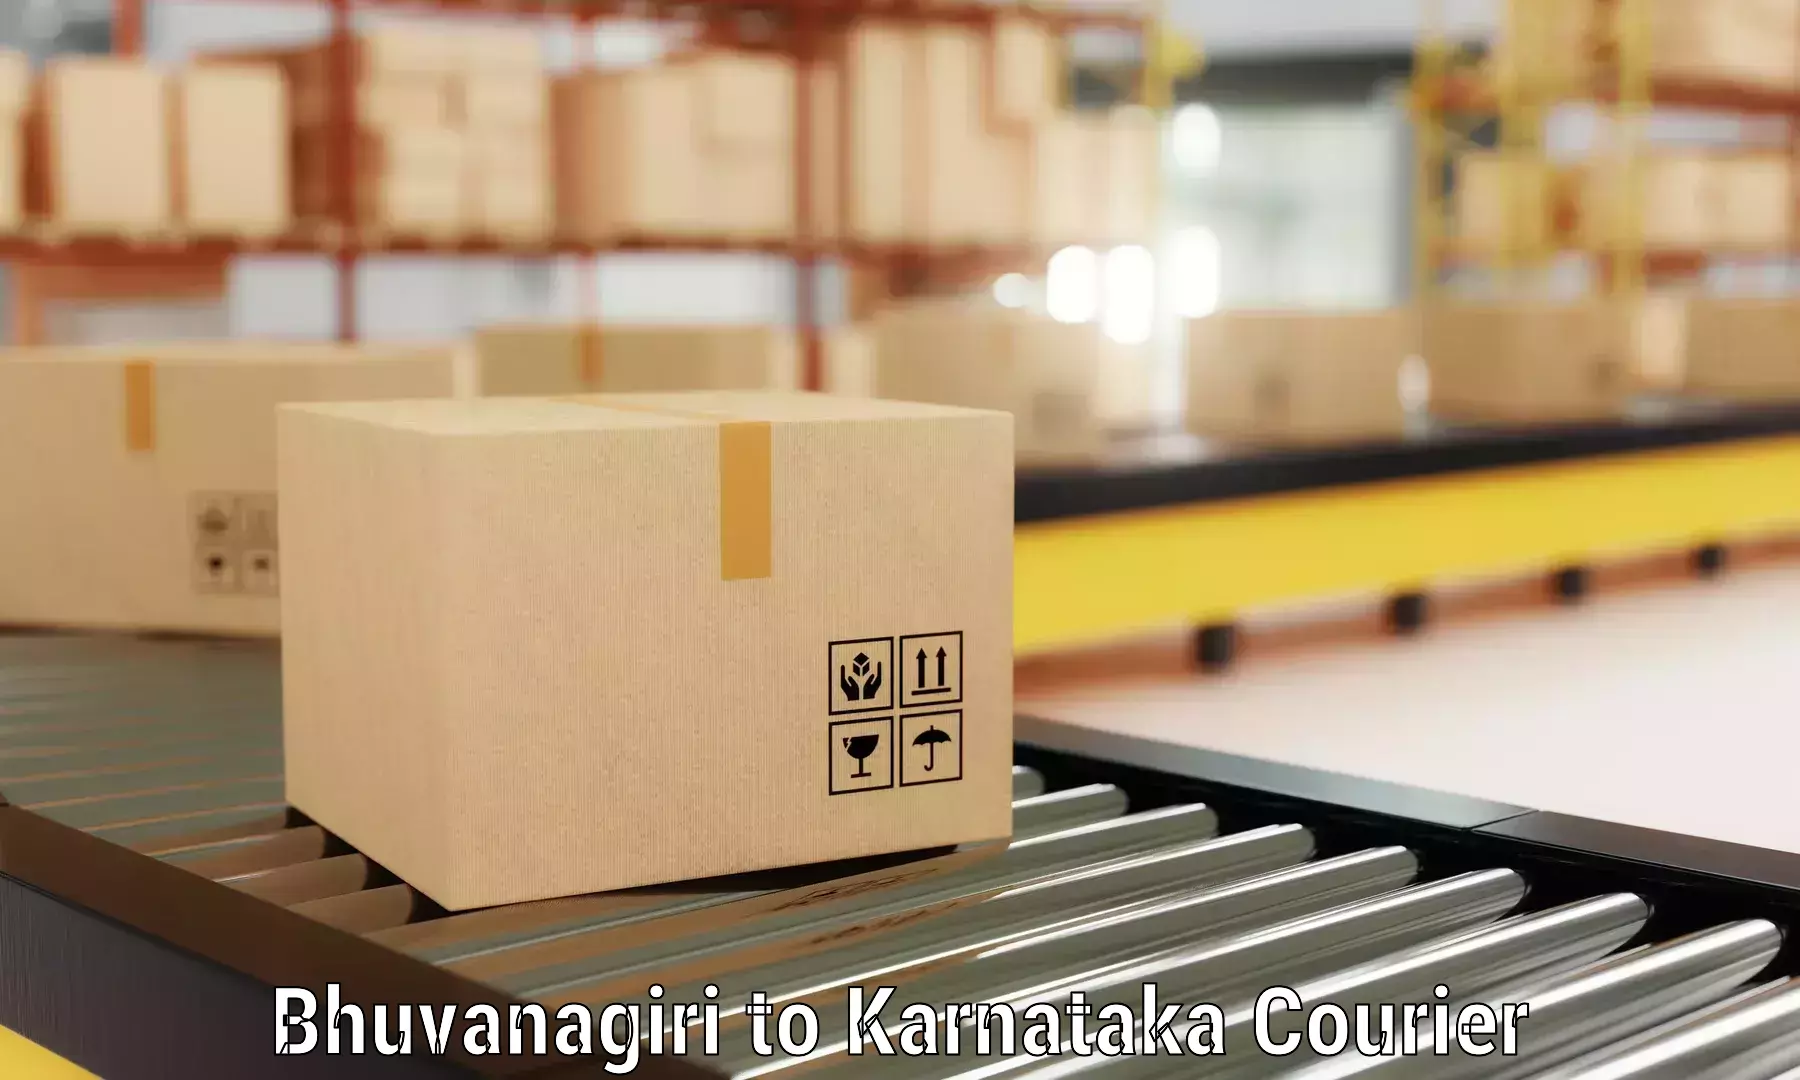 Professional movers and packers Bhuvanagiri to Munavalli